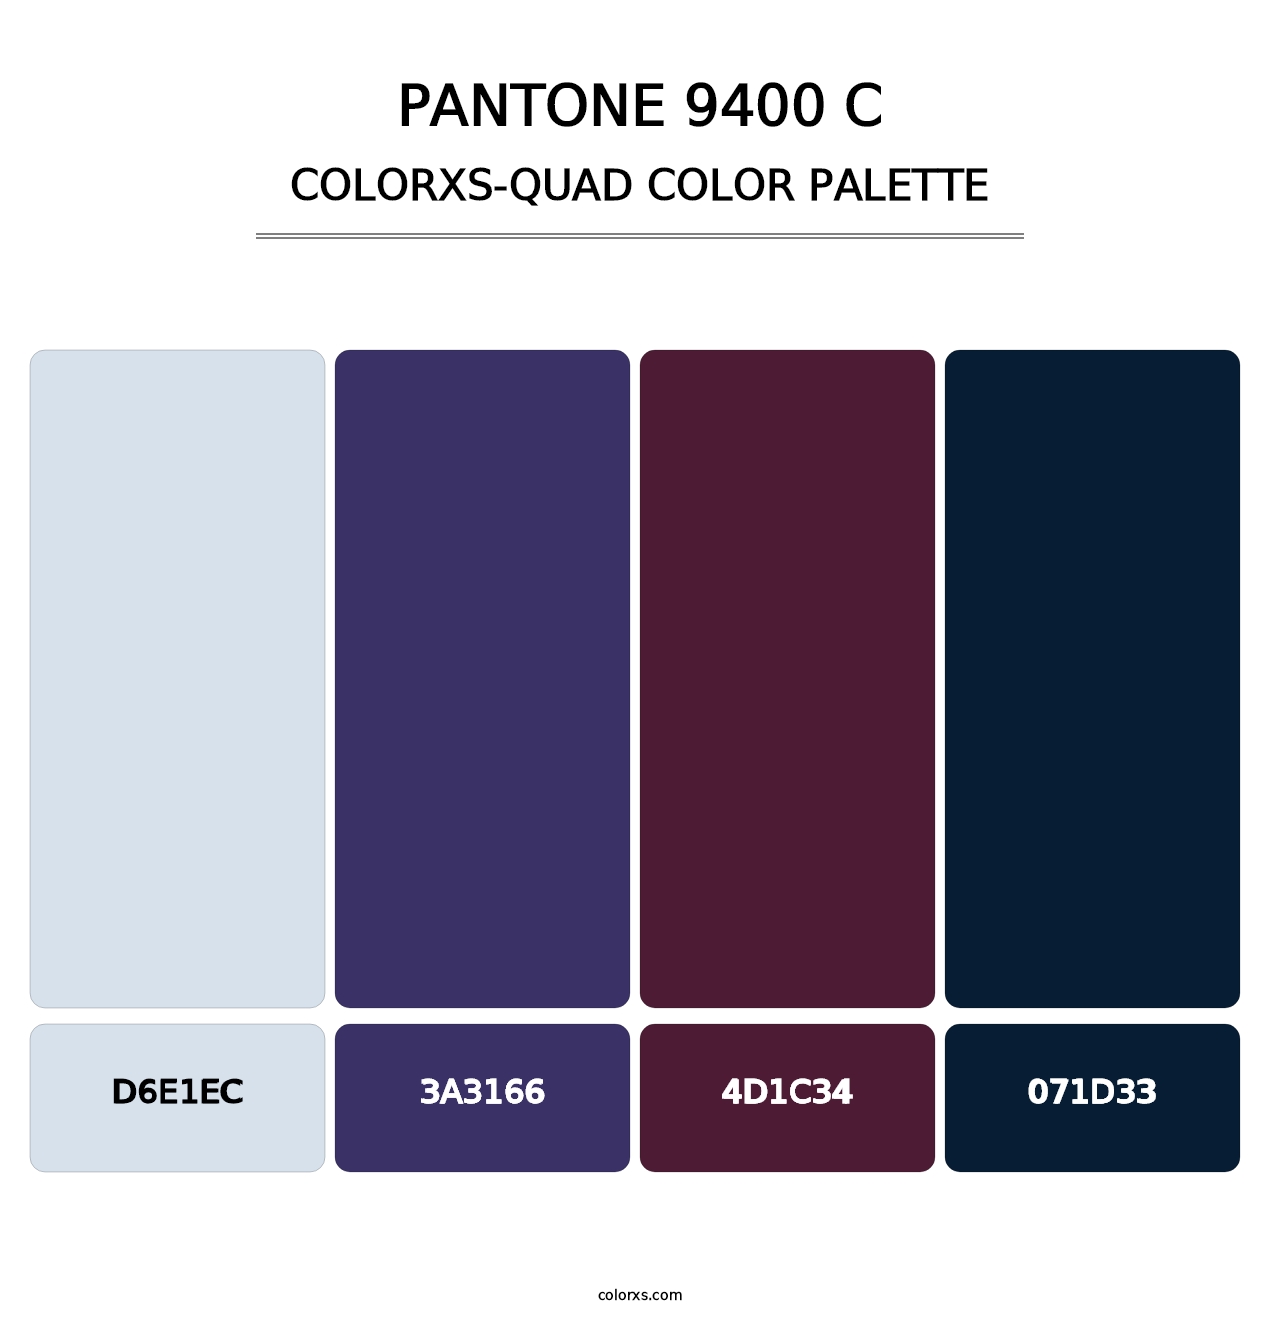 PANTONE 9400 C - Colorxs Quad Palette